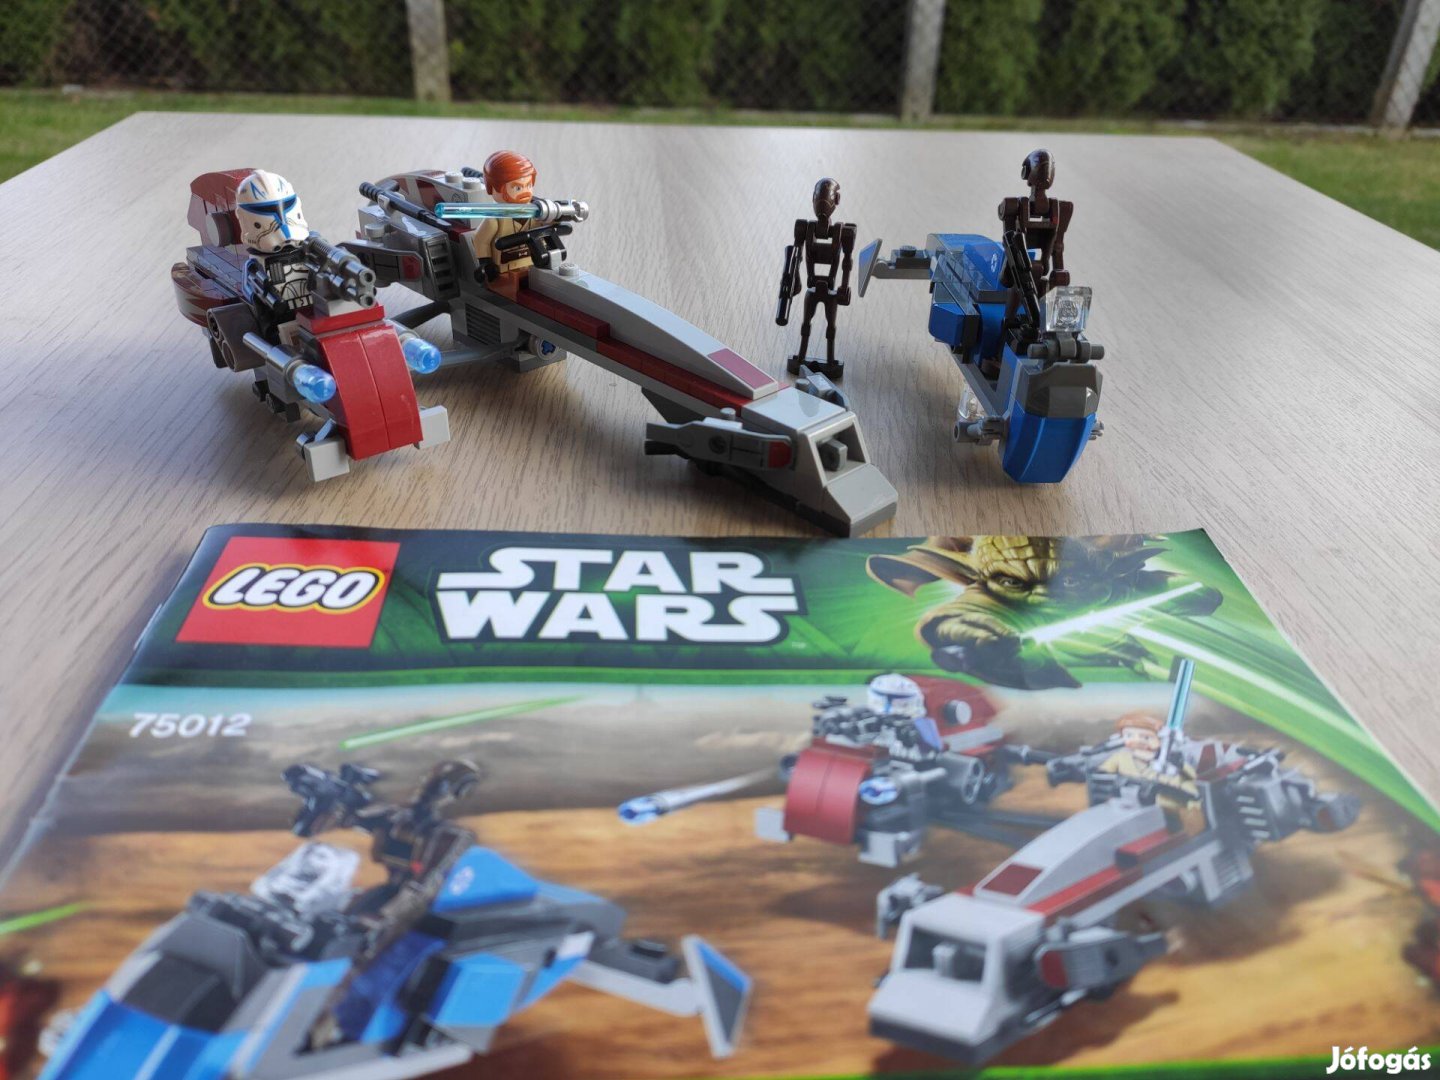 Lego Star Wars 75012 BARC speeder